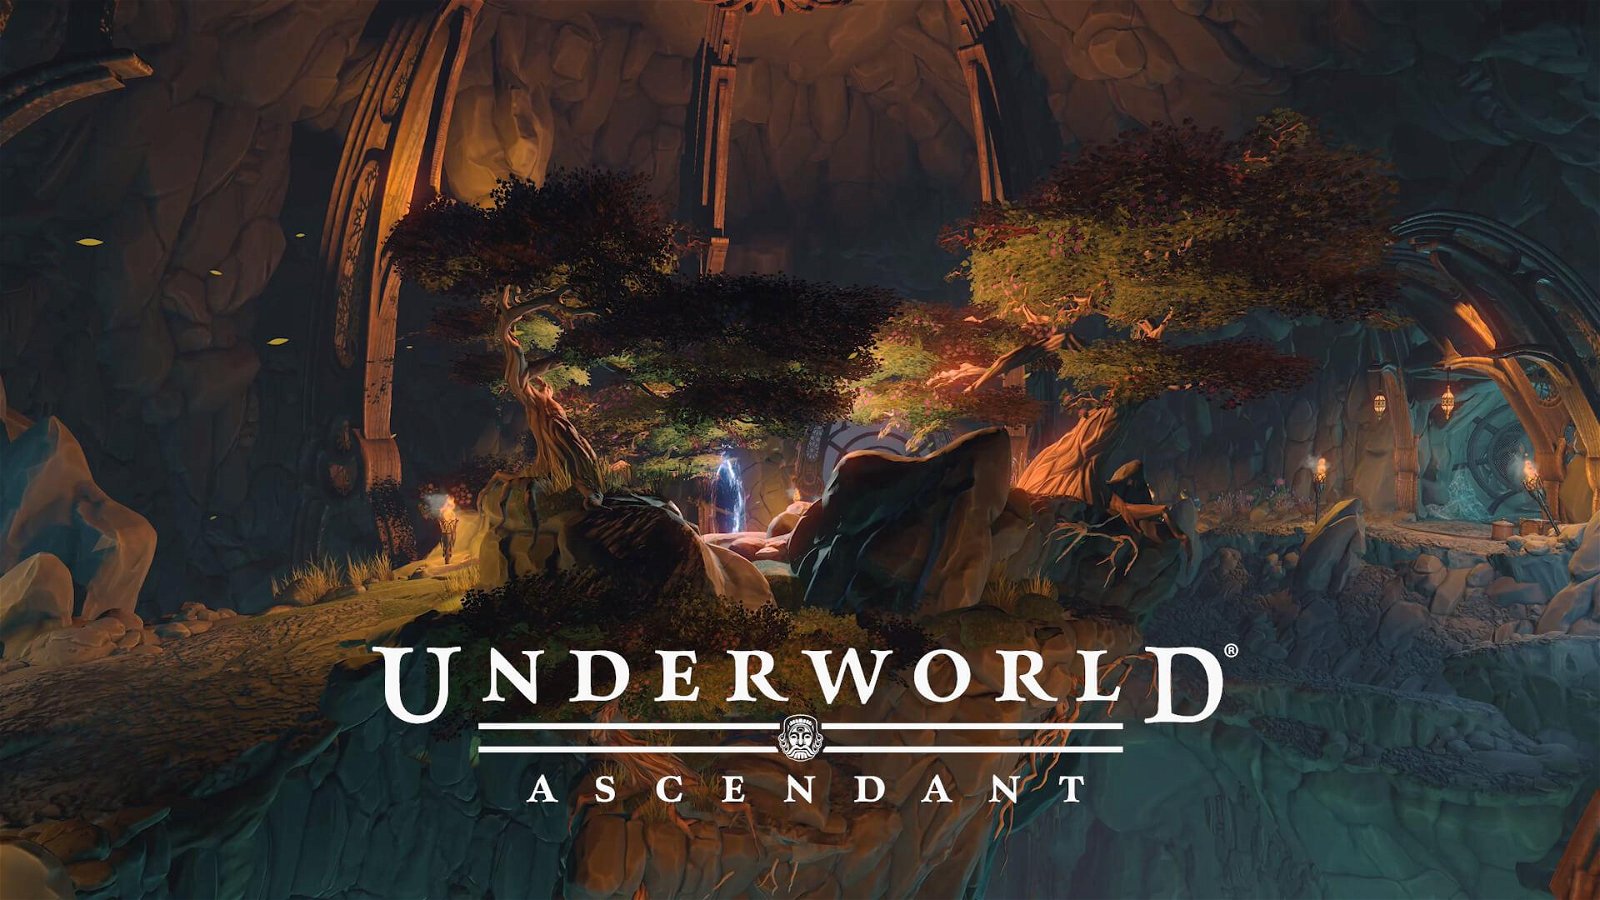 Underworld Ascendant protagonista di un nuovo trailer